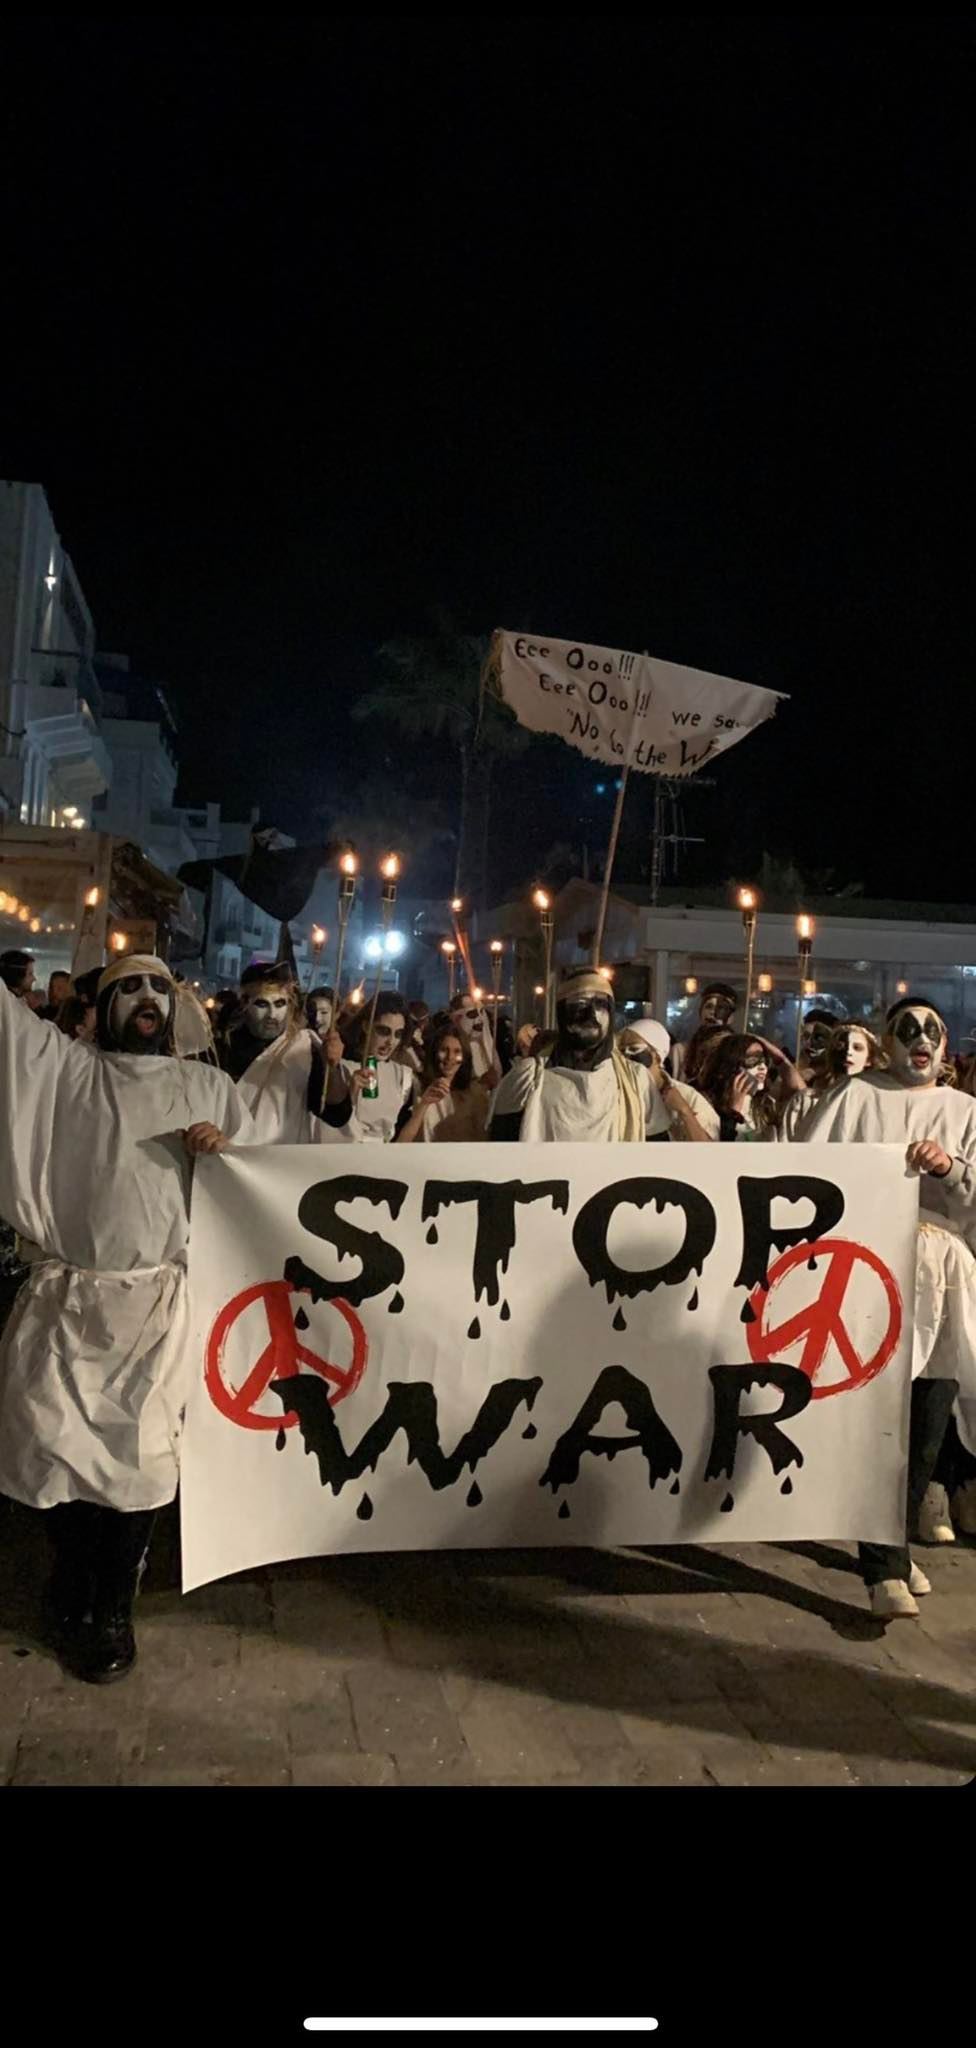 Νάξος, χτες βράδυ - Λαμπαδηφορίες - Το μήνυμα: Σταματήστε τον πόλεμο (φωτό & video)